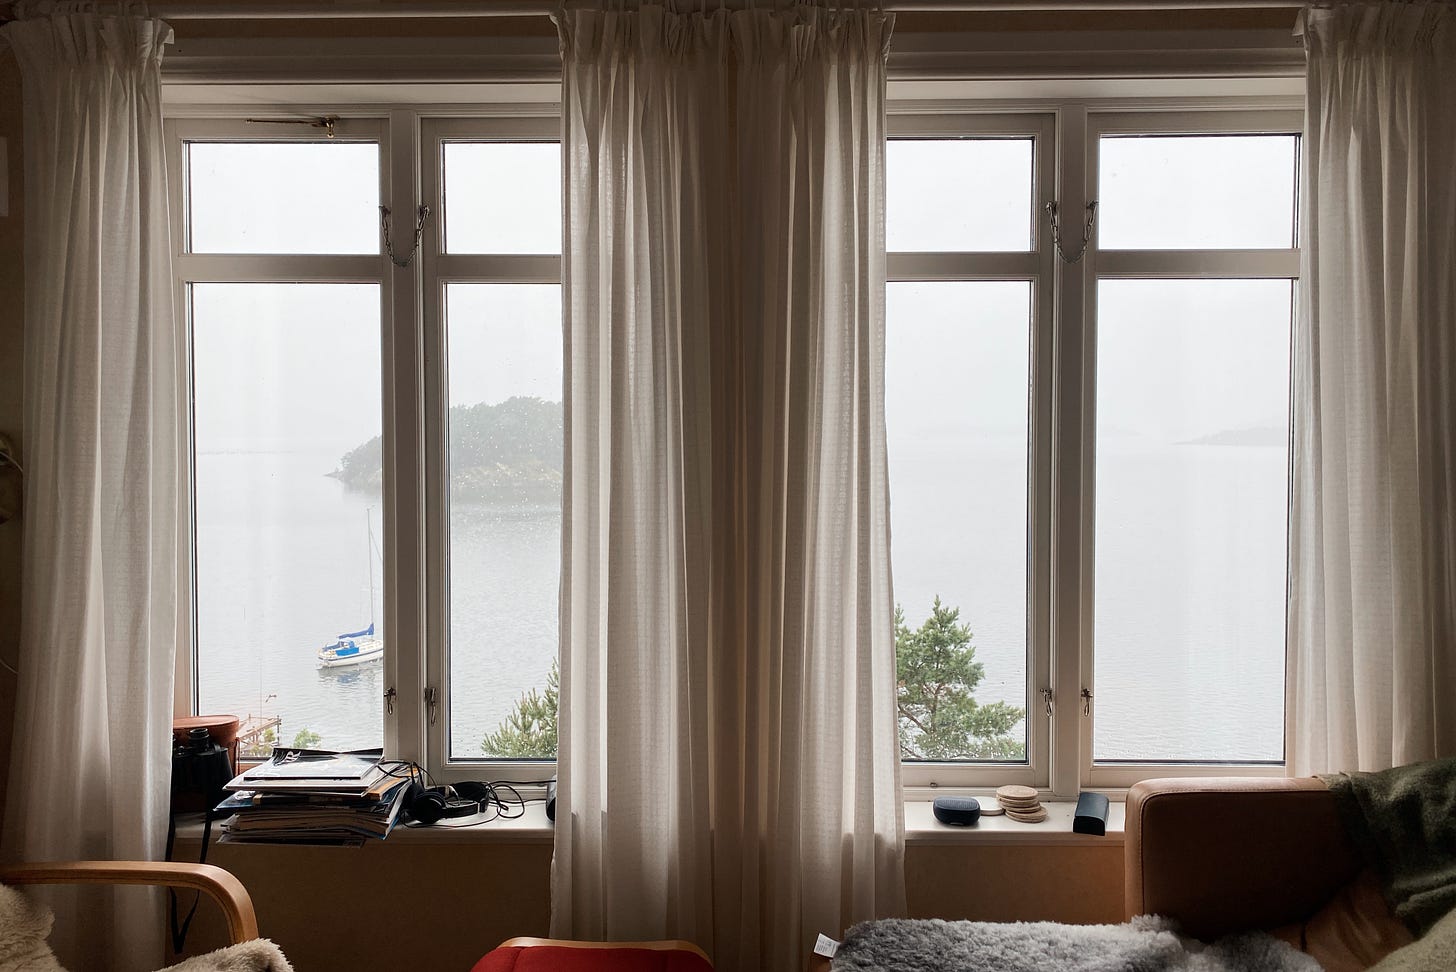 Imagem: Duas janelas altas com cortinas transparentes de onde se vê o mar, um barco e uma ilha